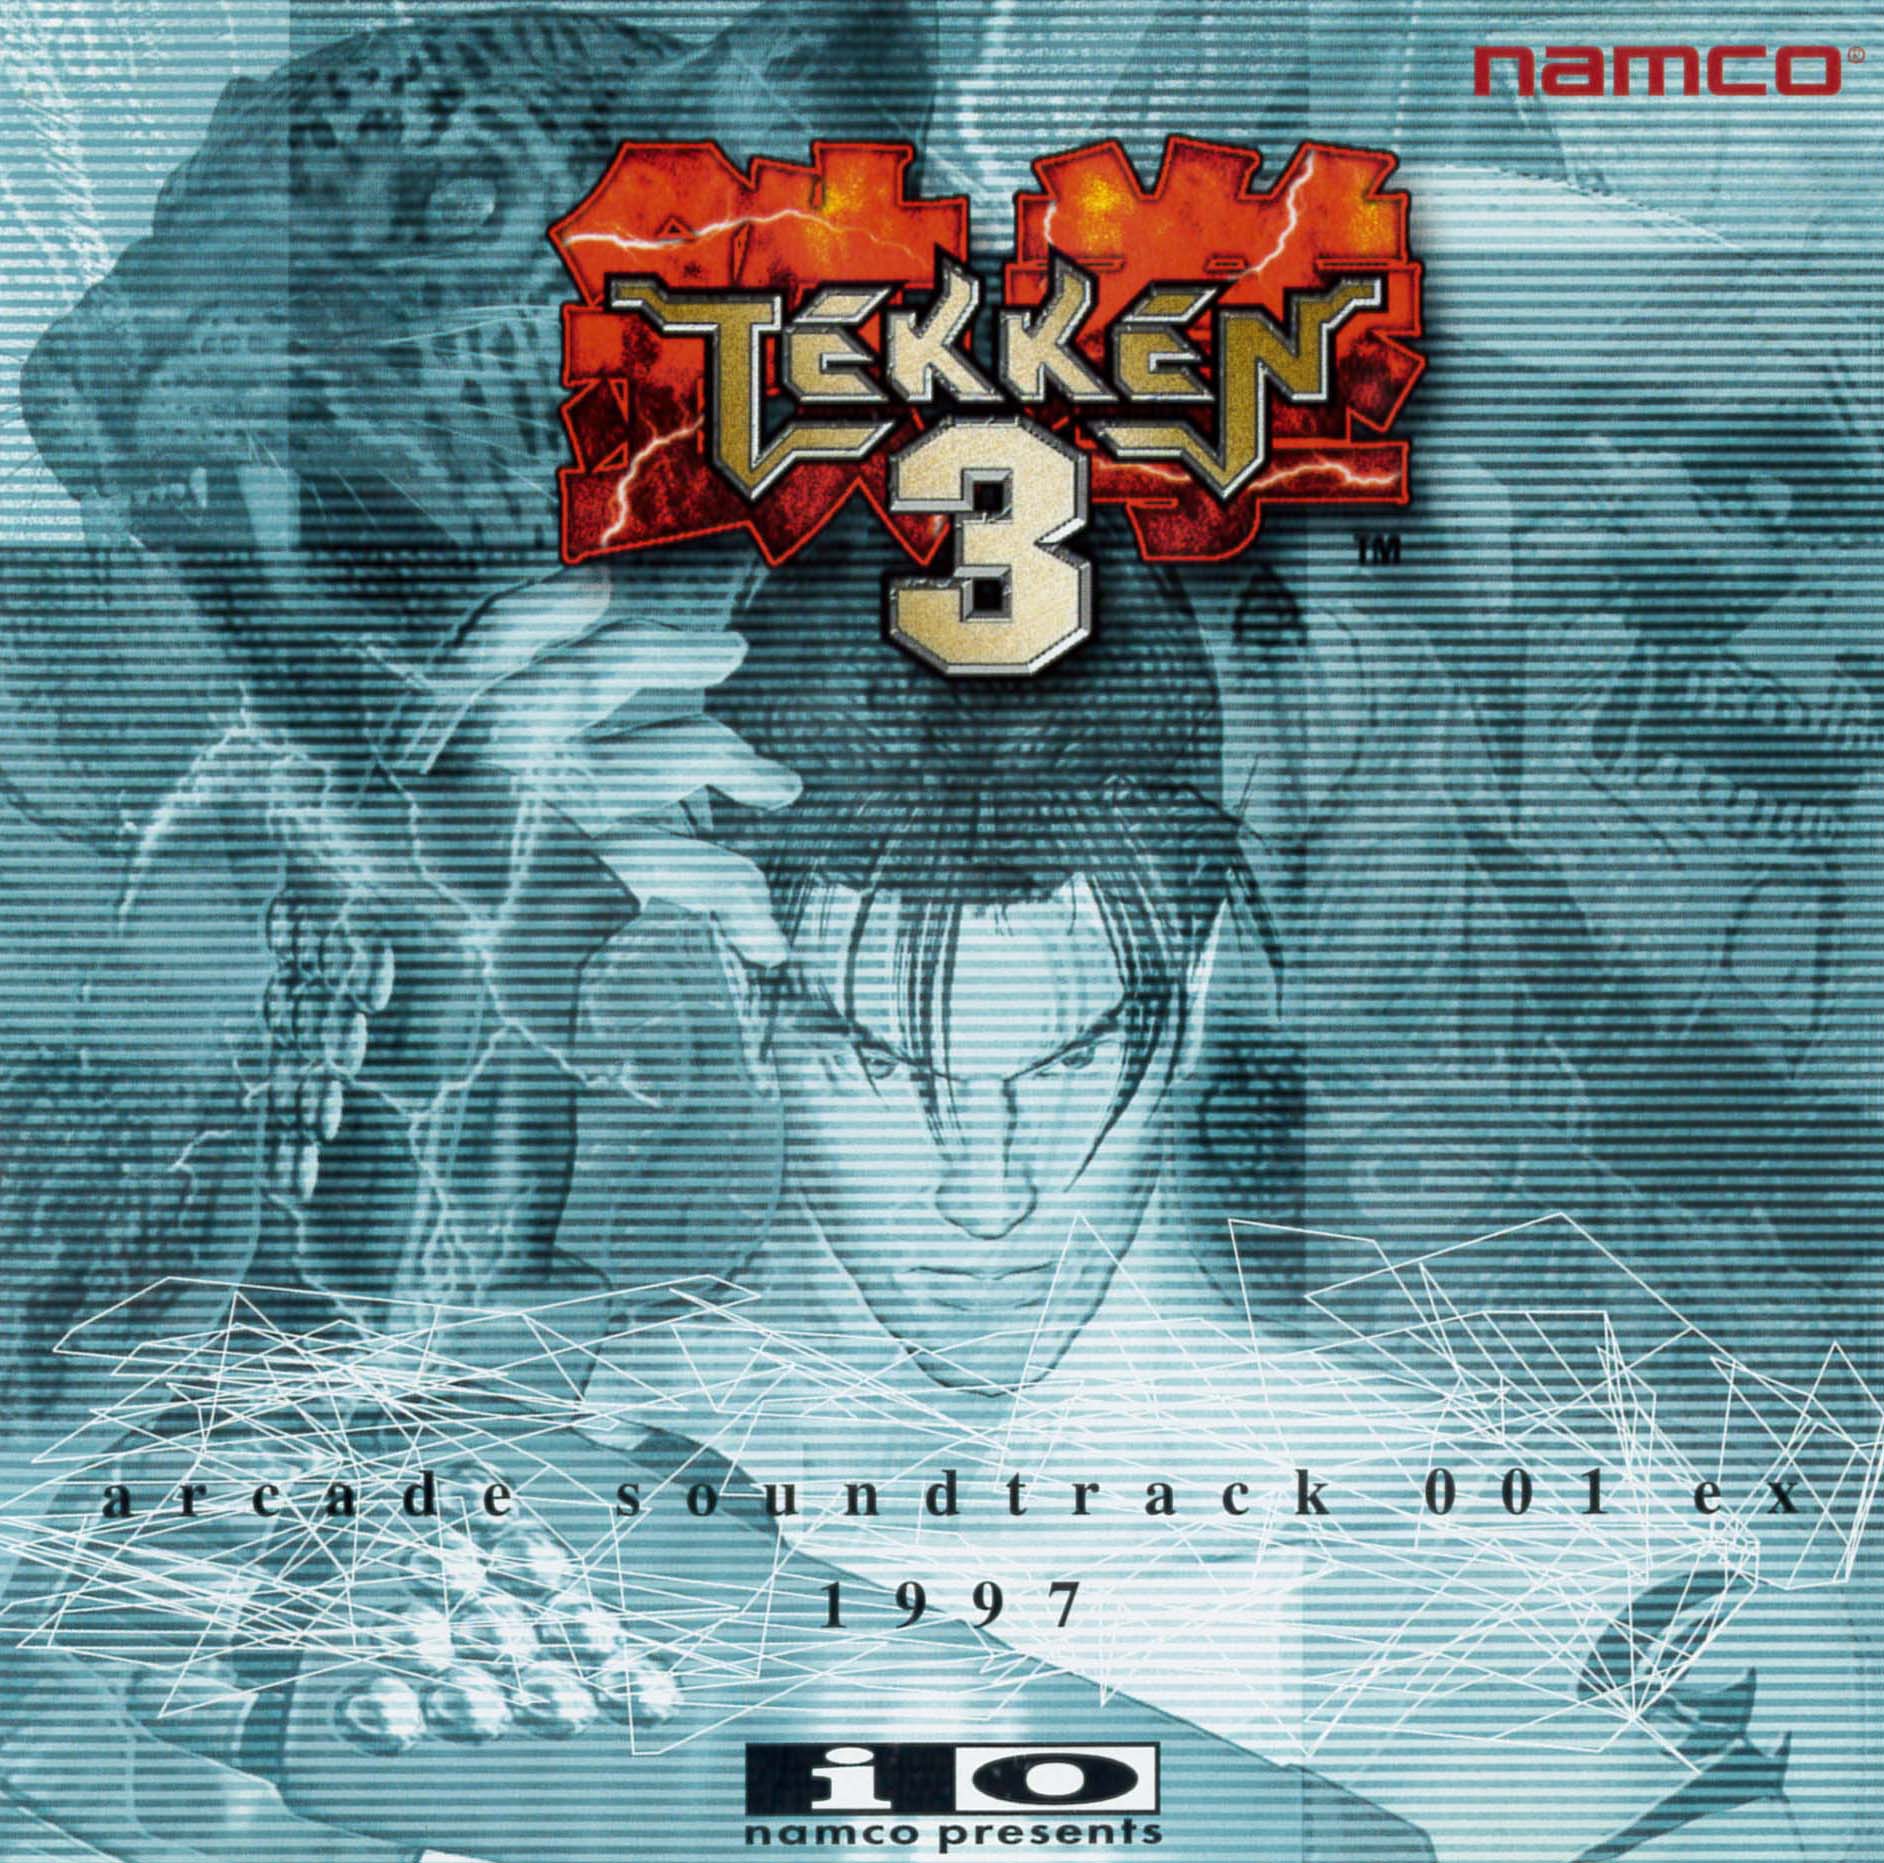 download tekken 2 arcade game